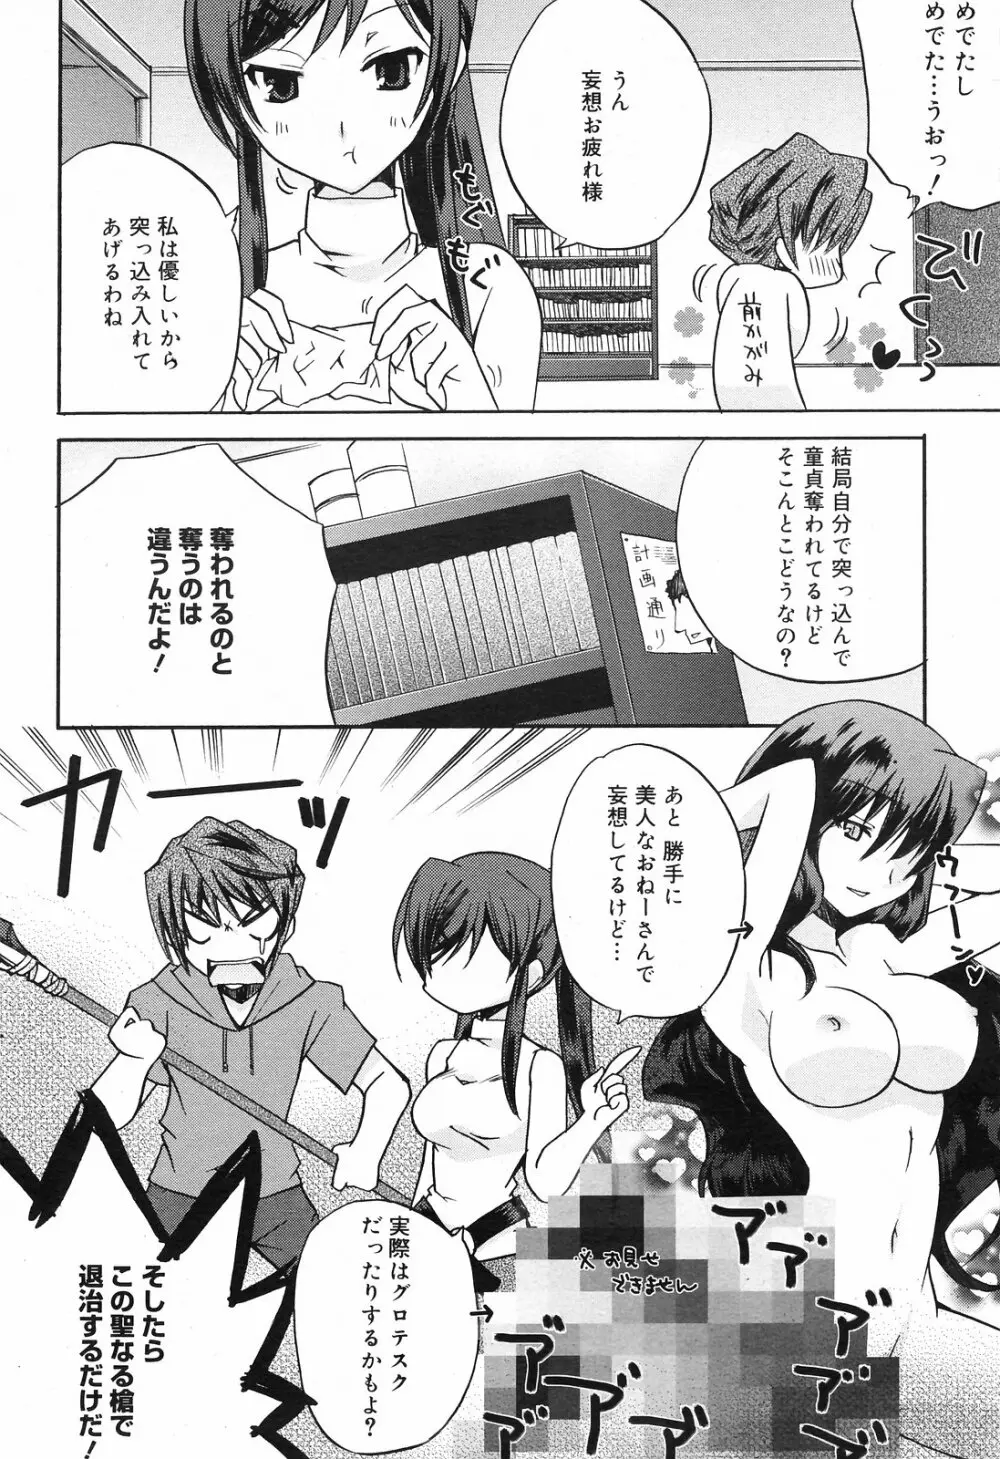 Manga Bangaichi 2008-09 82ページ